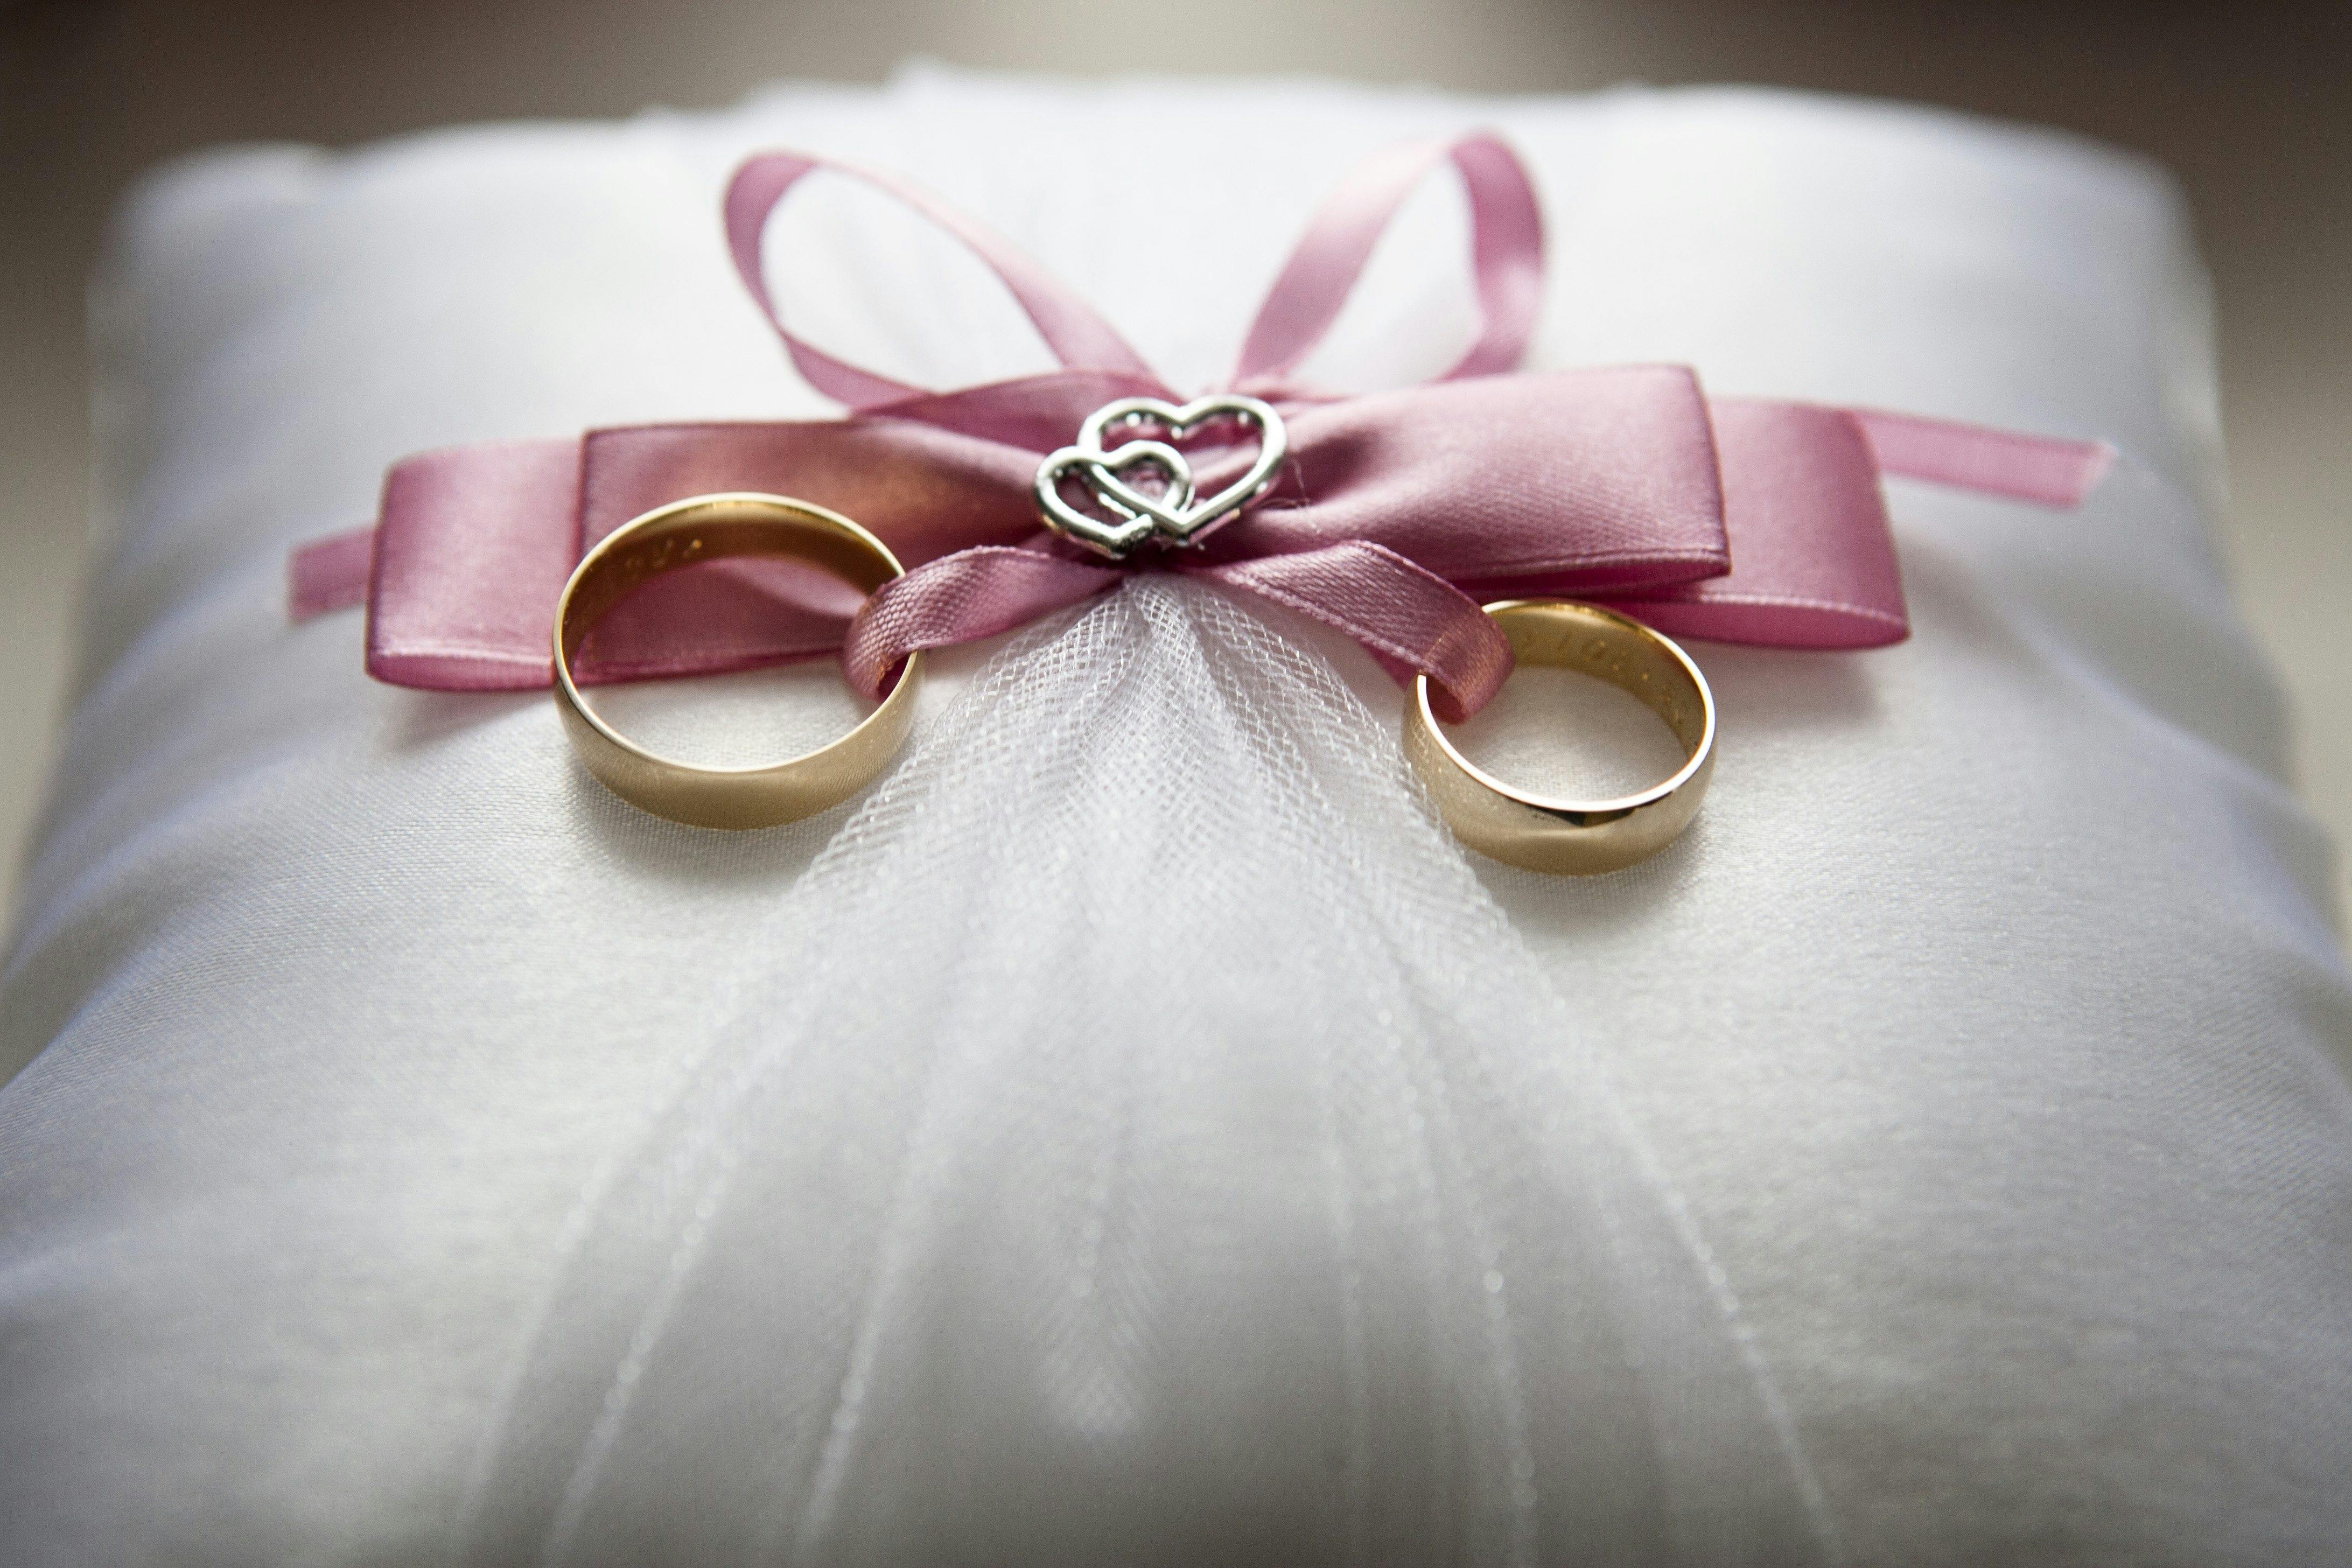 Wedding rings | Source: Pexels